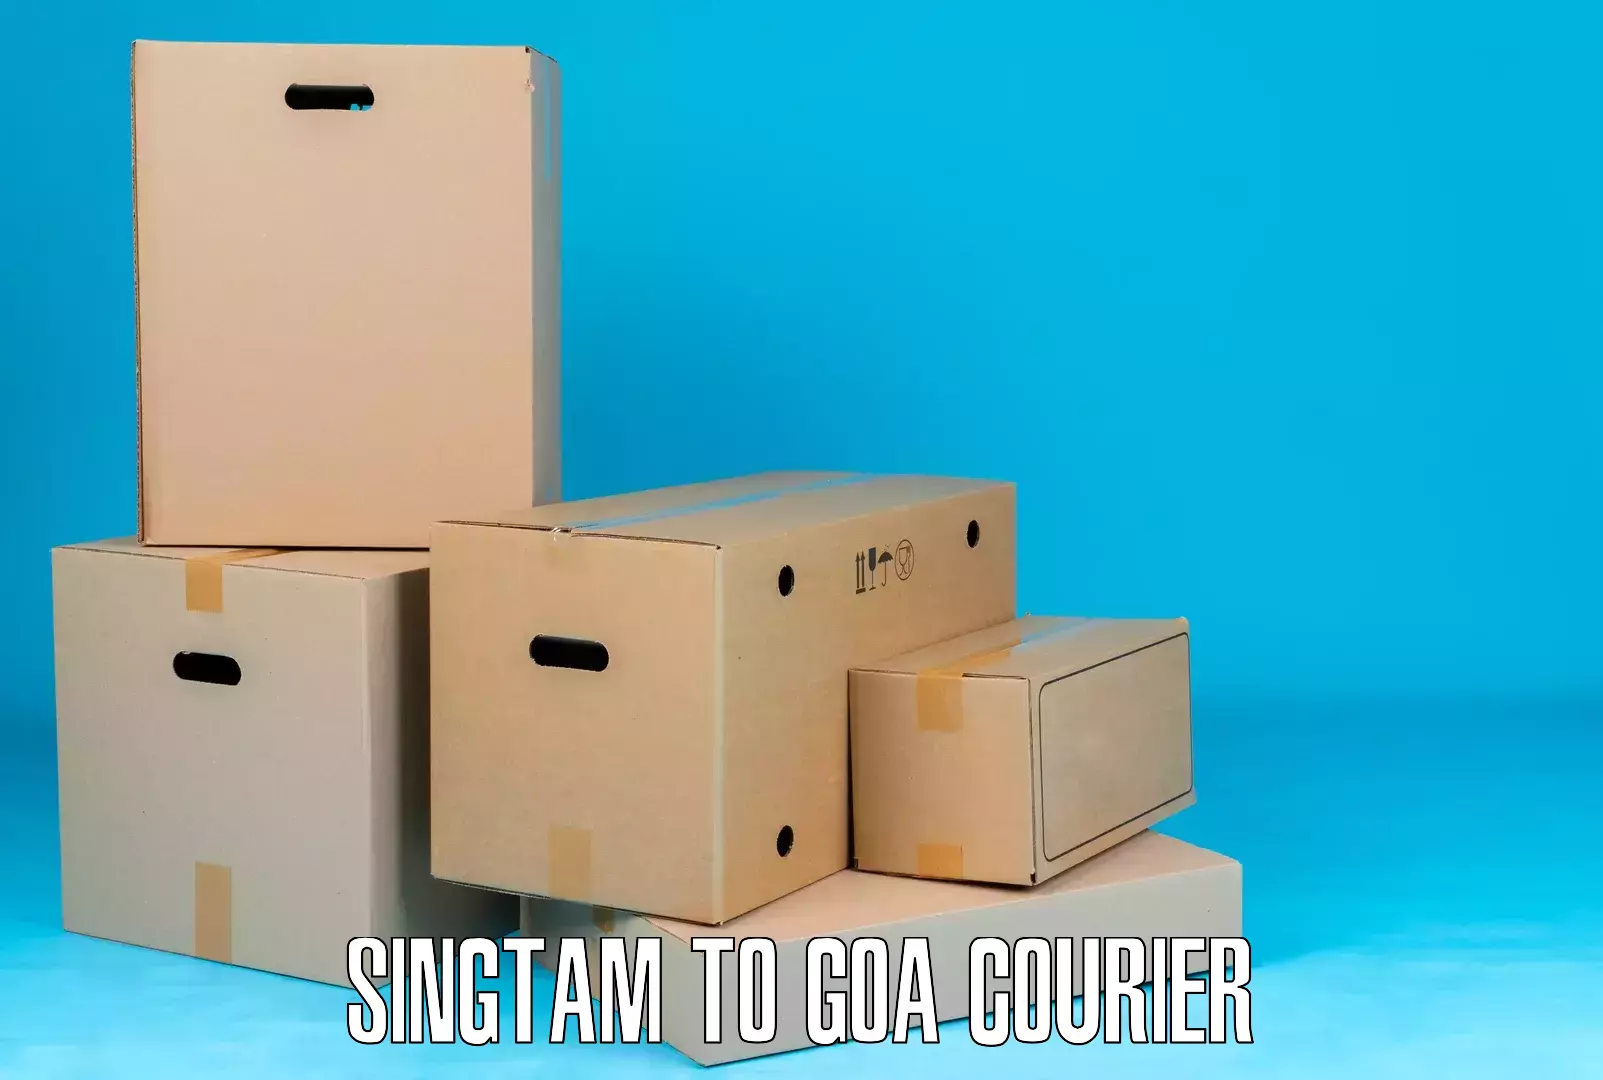 Efficient cargo services Singtam to South Goa